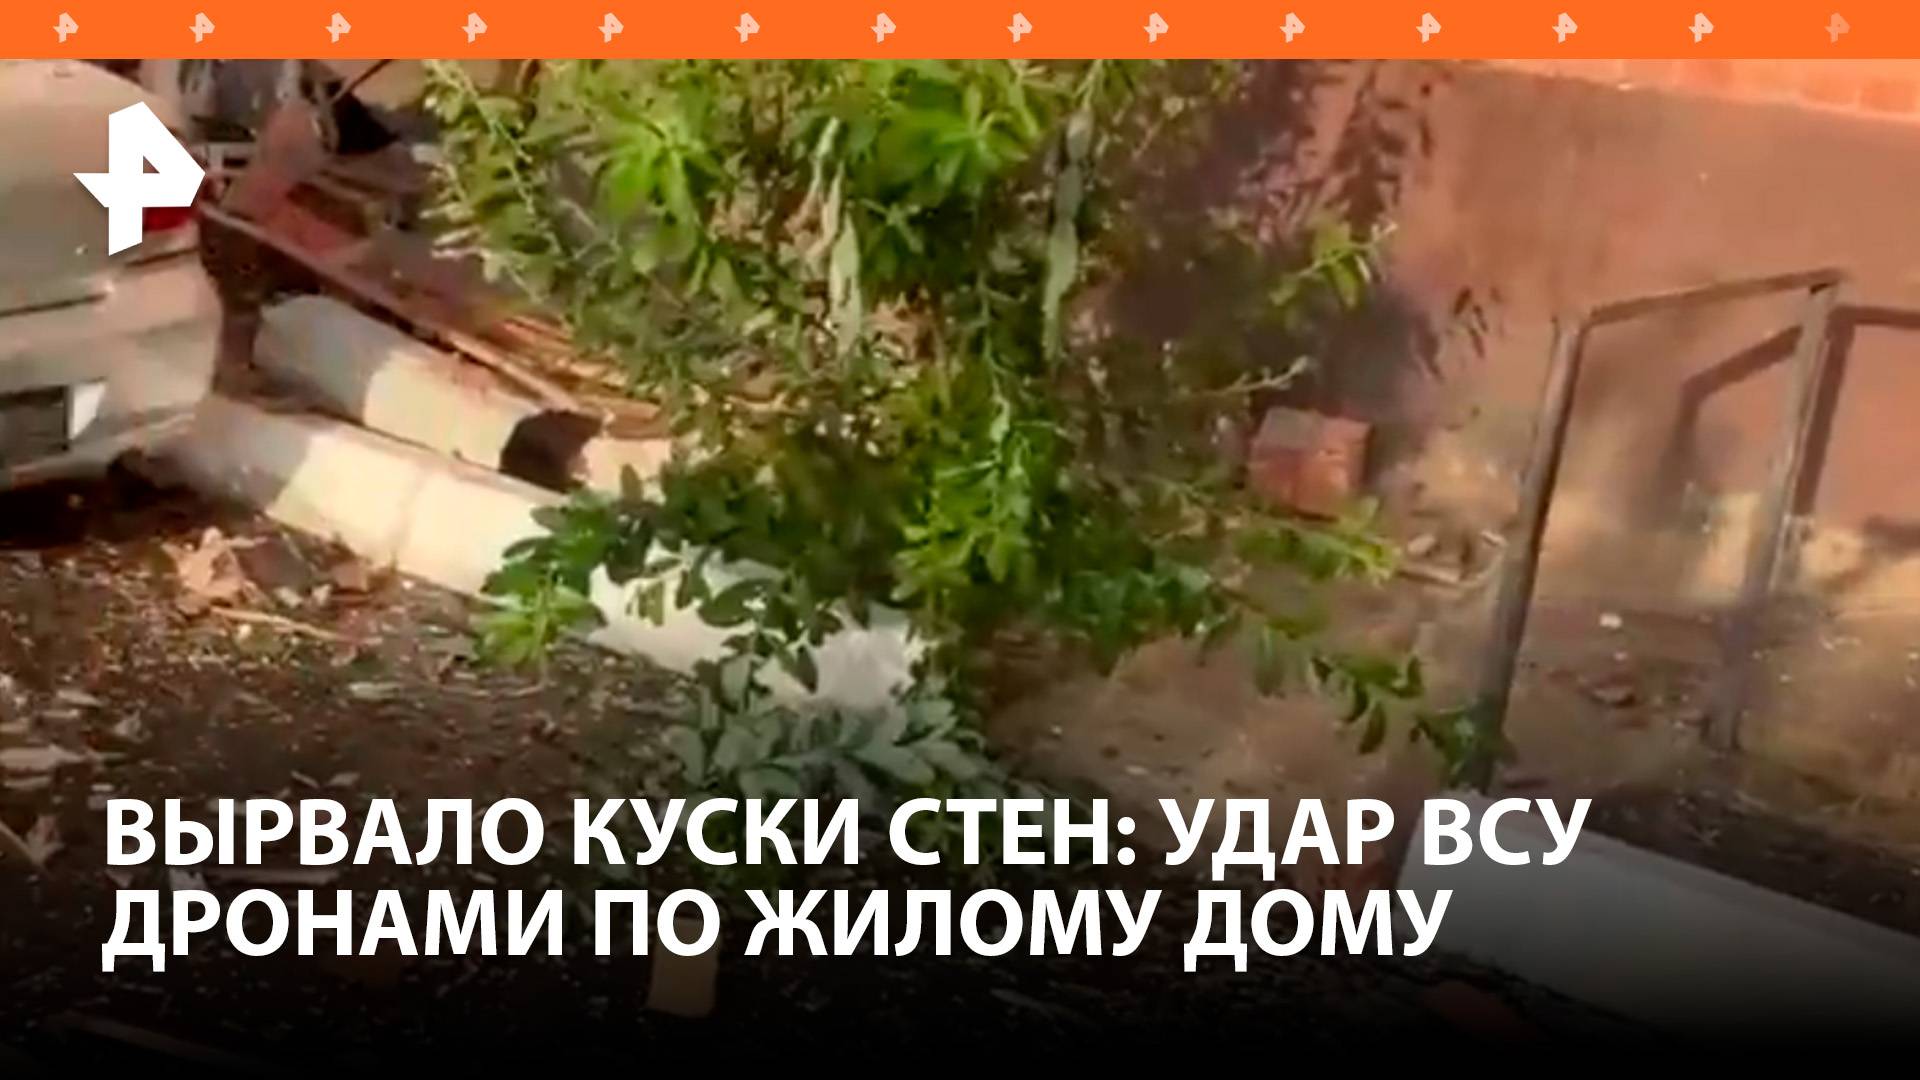 "Вырвало целые фрагменты стен": последствия удара дронами по жилому дому в Приморско-Ахтарске / РЕН